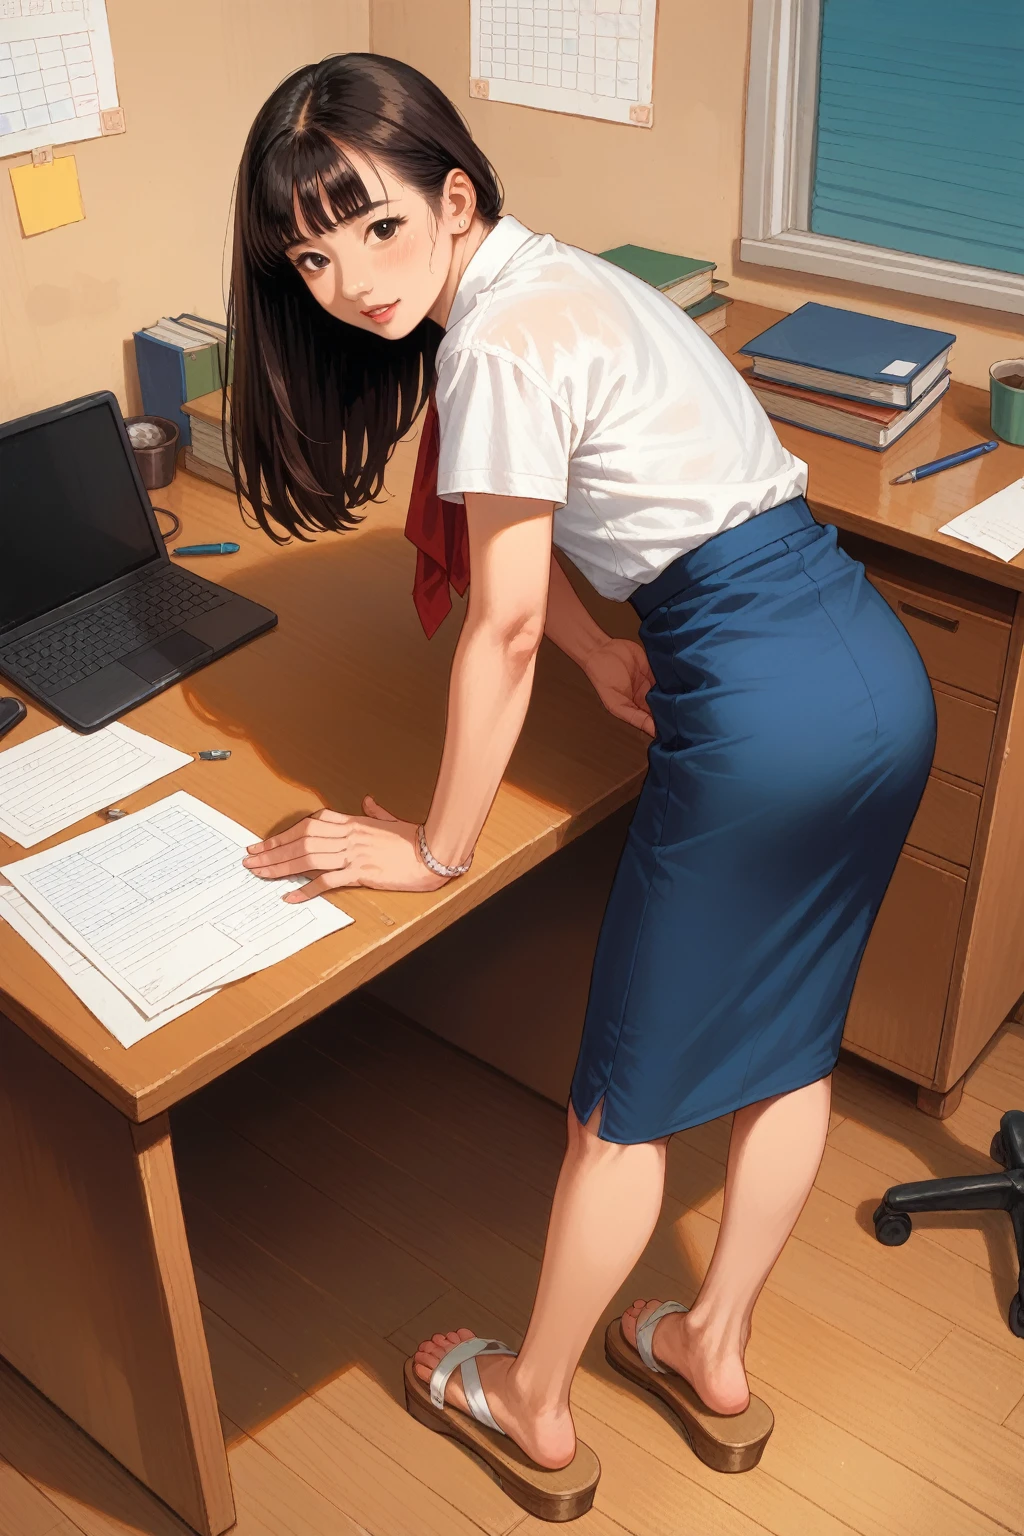 Азиатская женщина, склонившаяся над офисным столом, юбка задралась, Сандалии